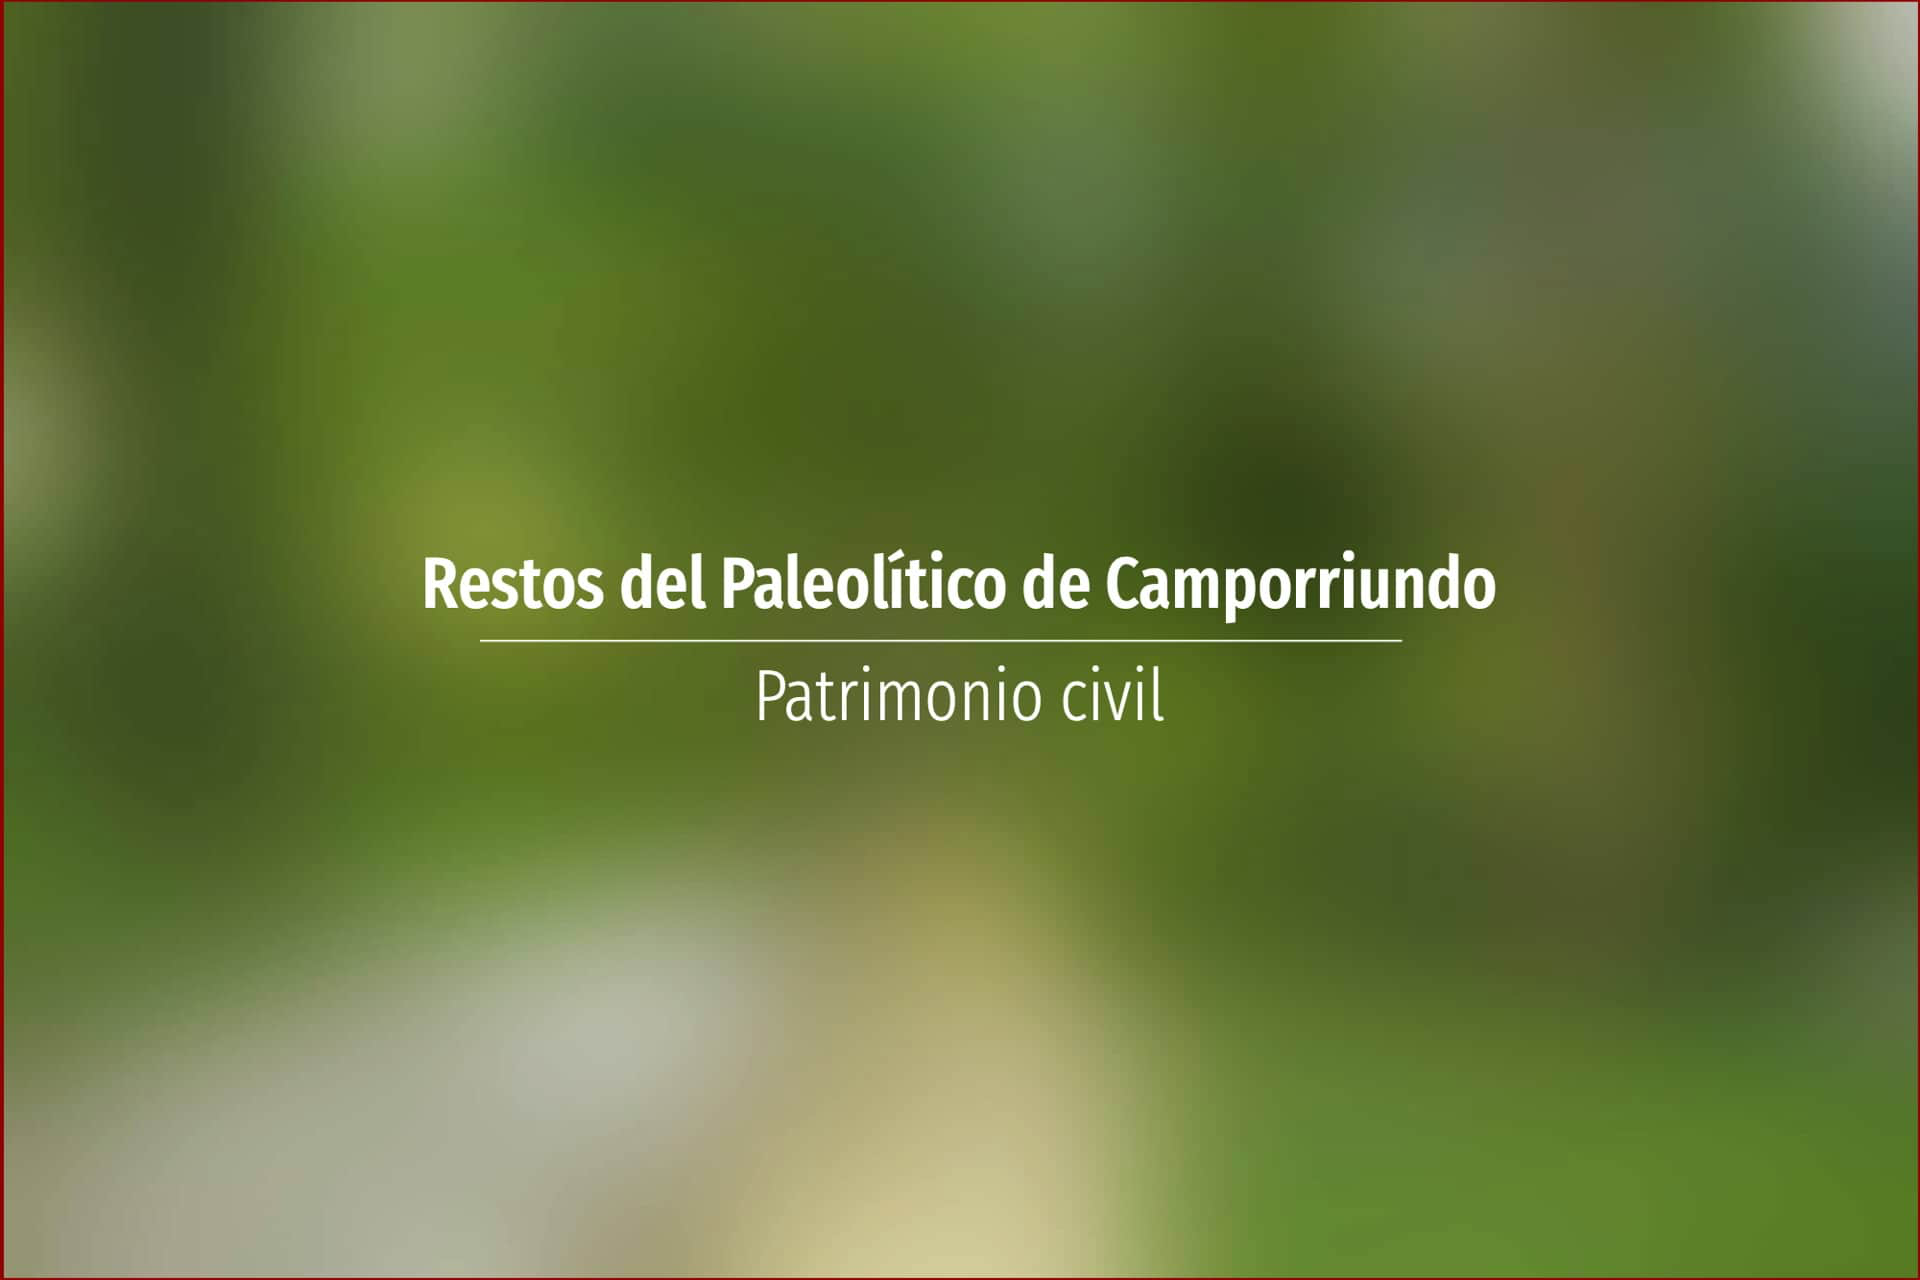 Restos del Paleolítico de Camporriundo